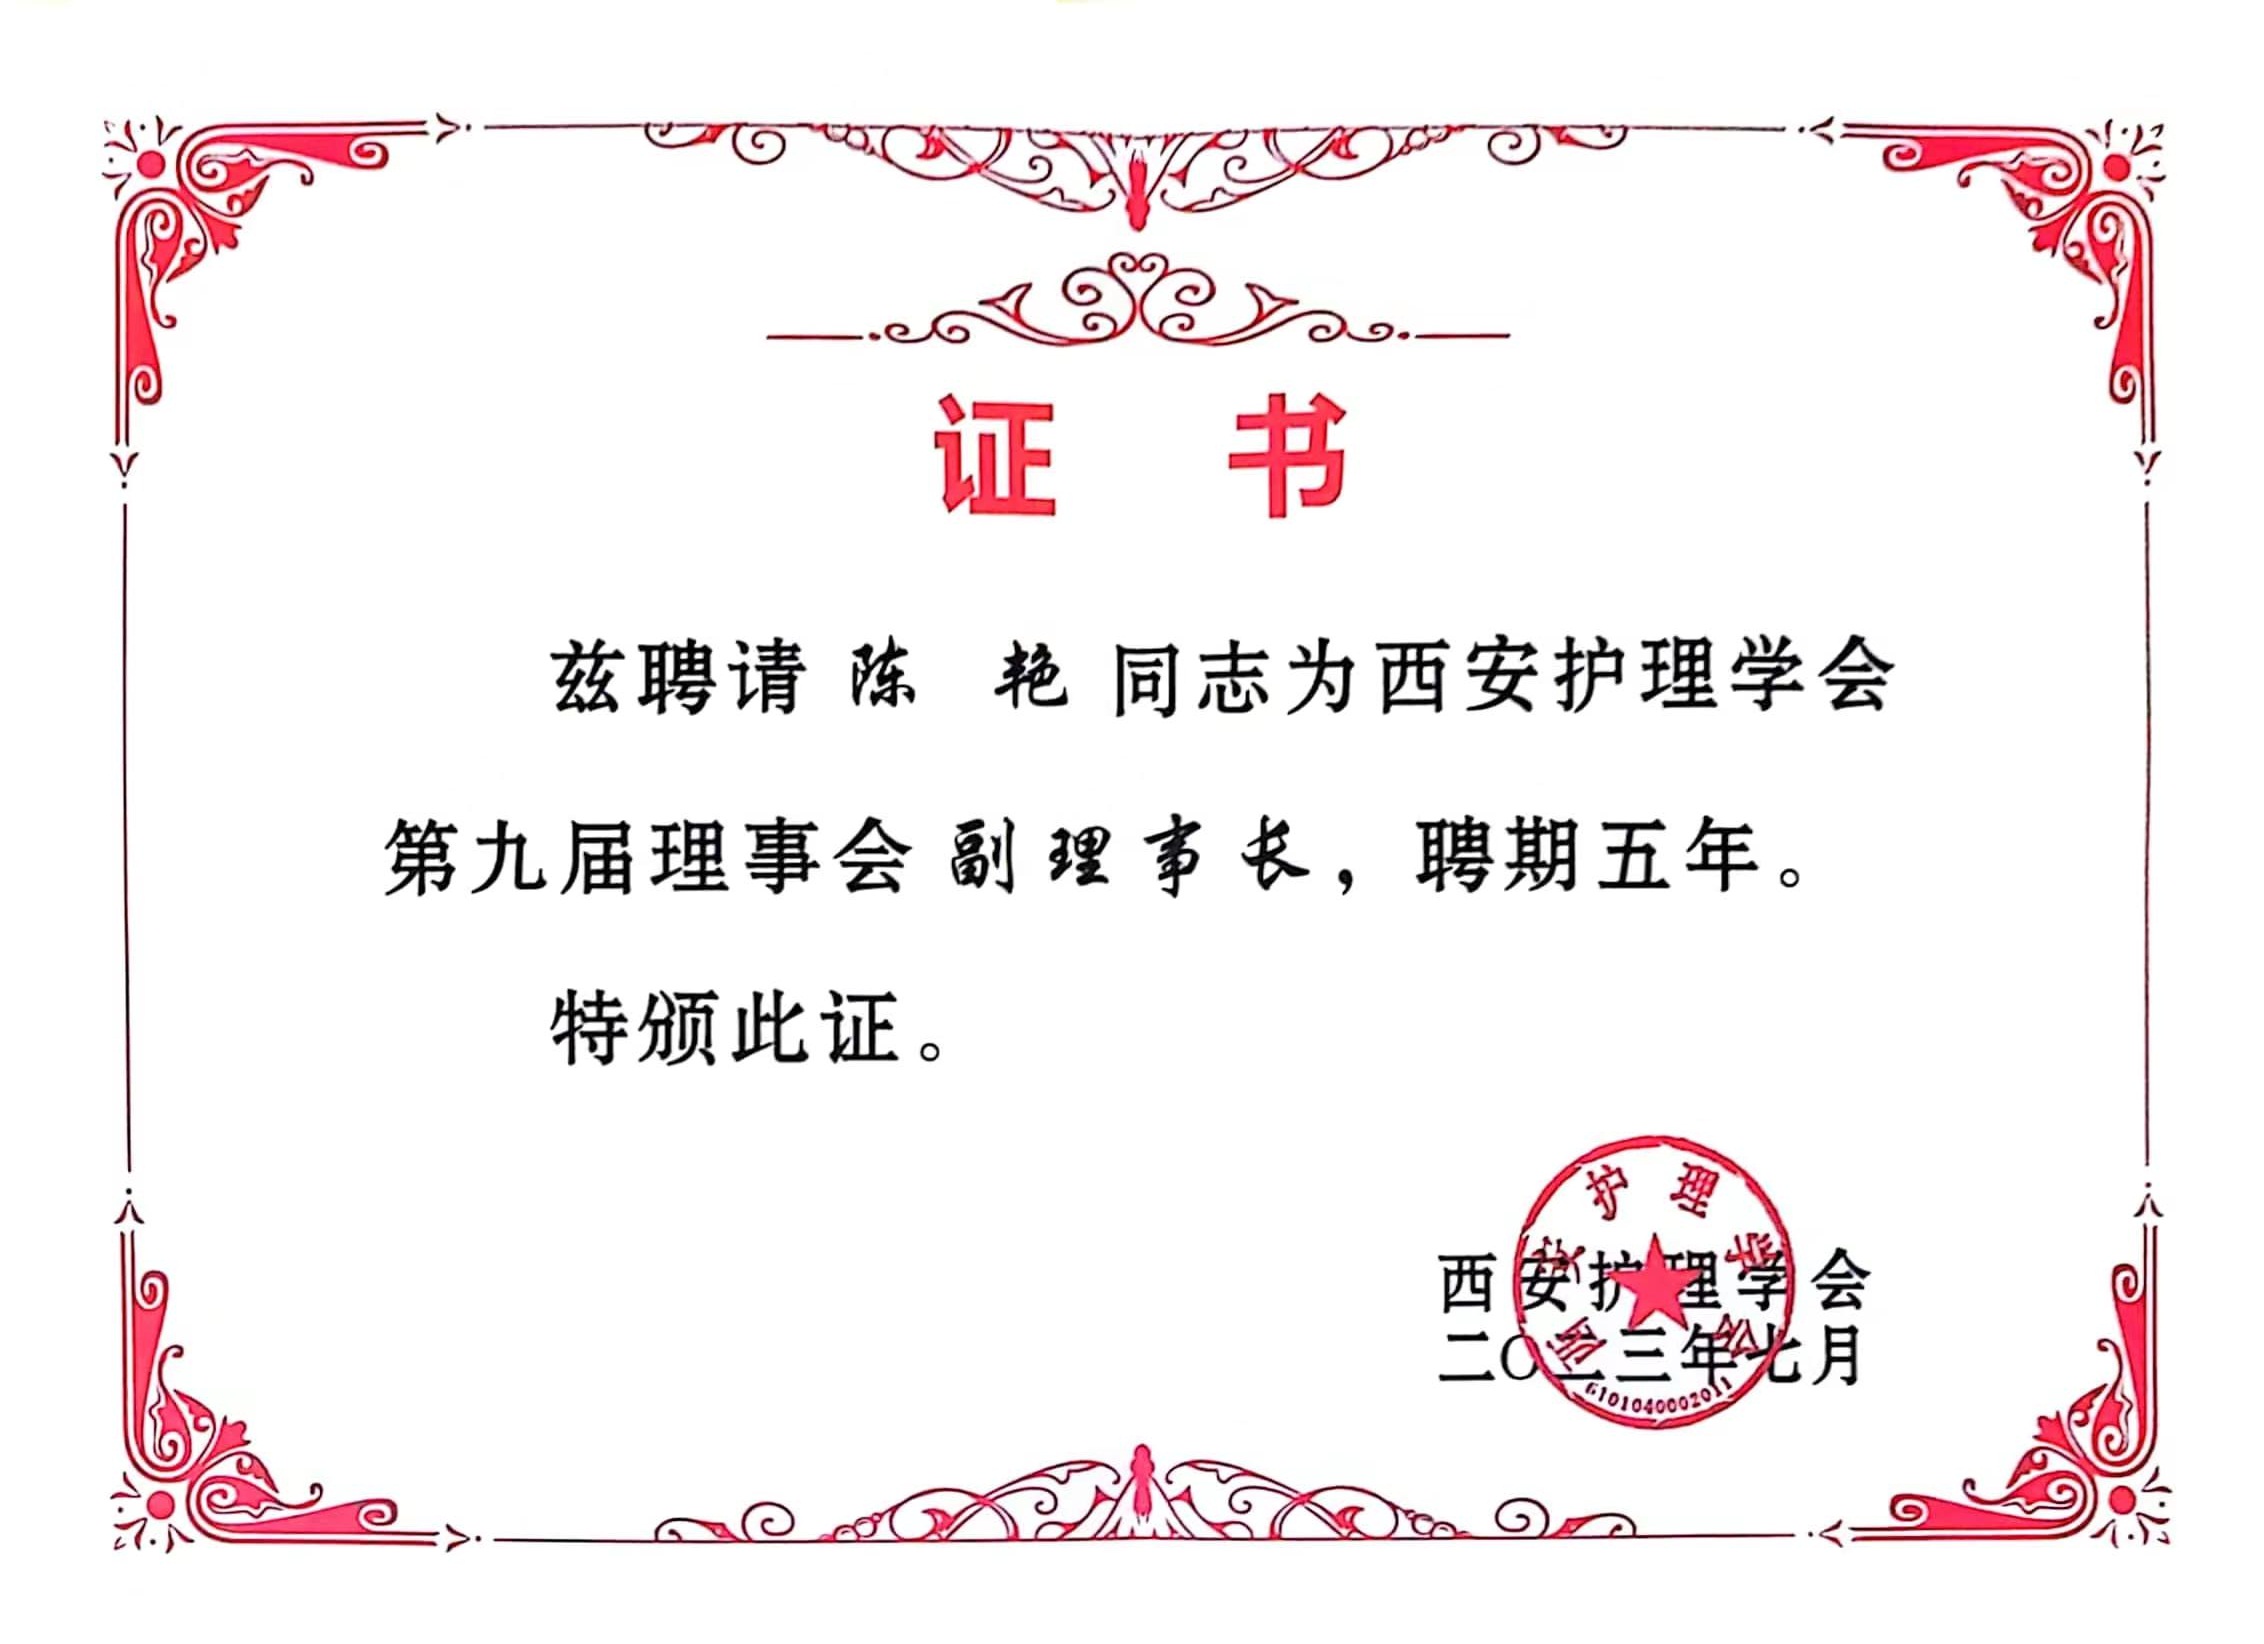 福彩3d护理部主任陈艳 当选为西安护理学会第九届理事会副理事长